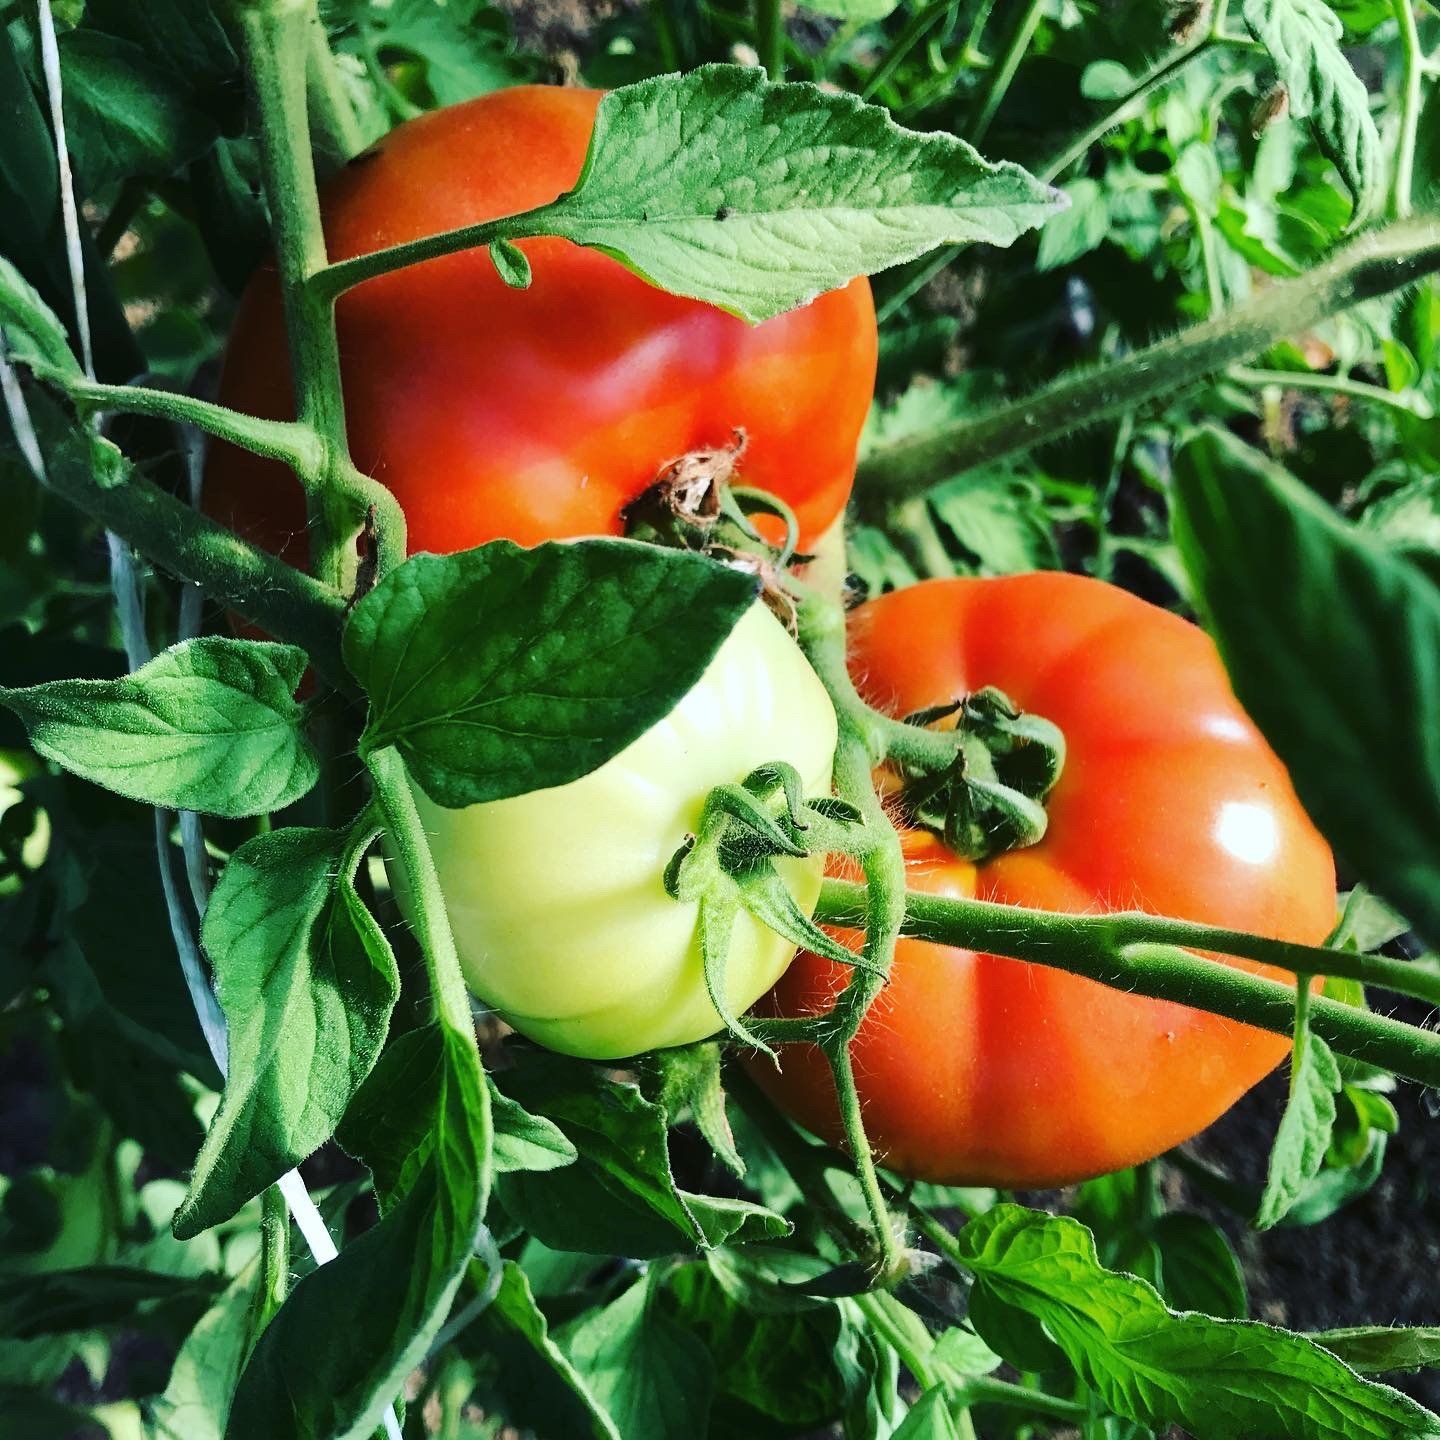 Tomato Season is rolling in!